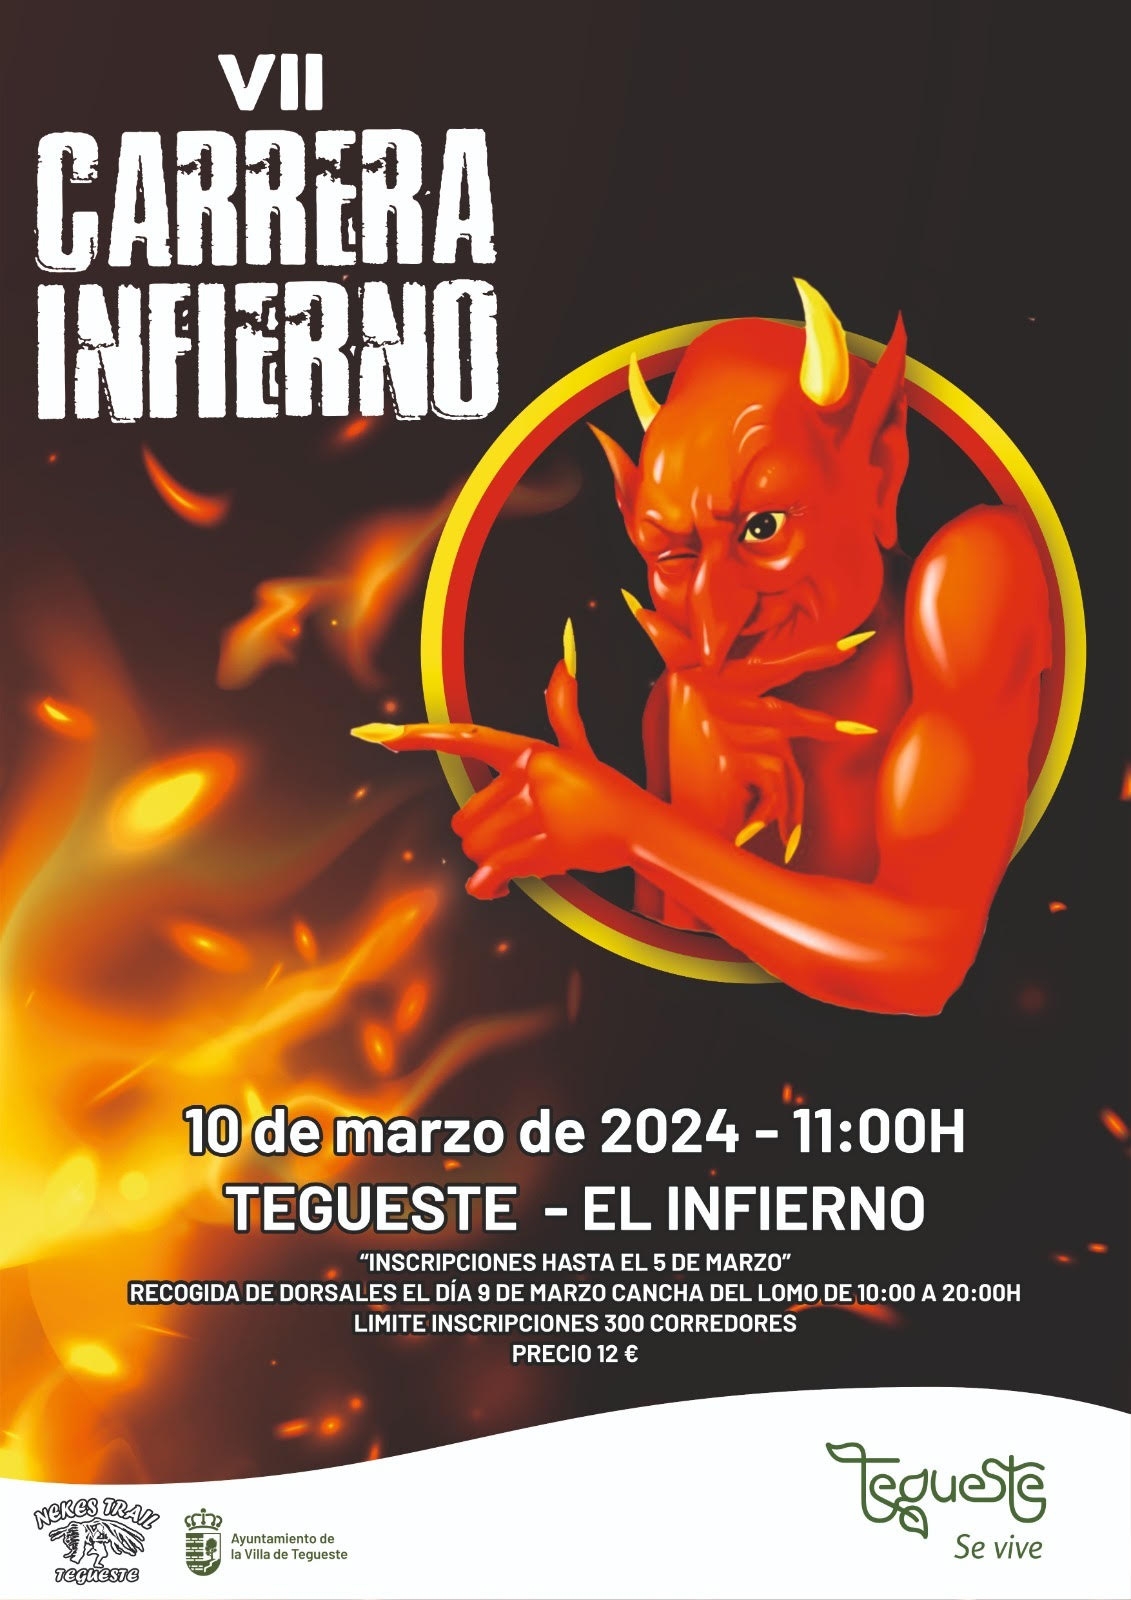 VII CARRERA DE MONTAÑA EL INFIERNO 2024 - Register